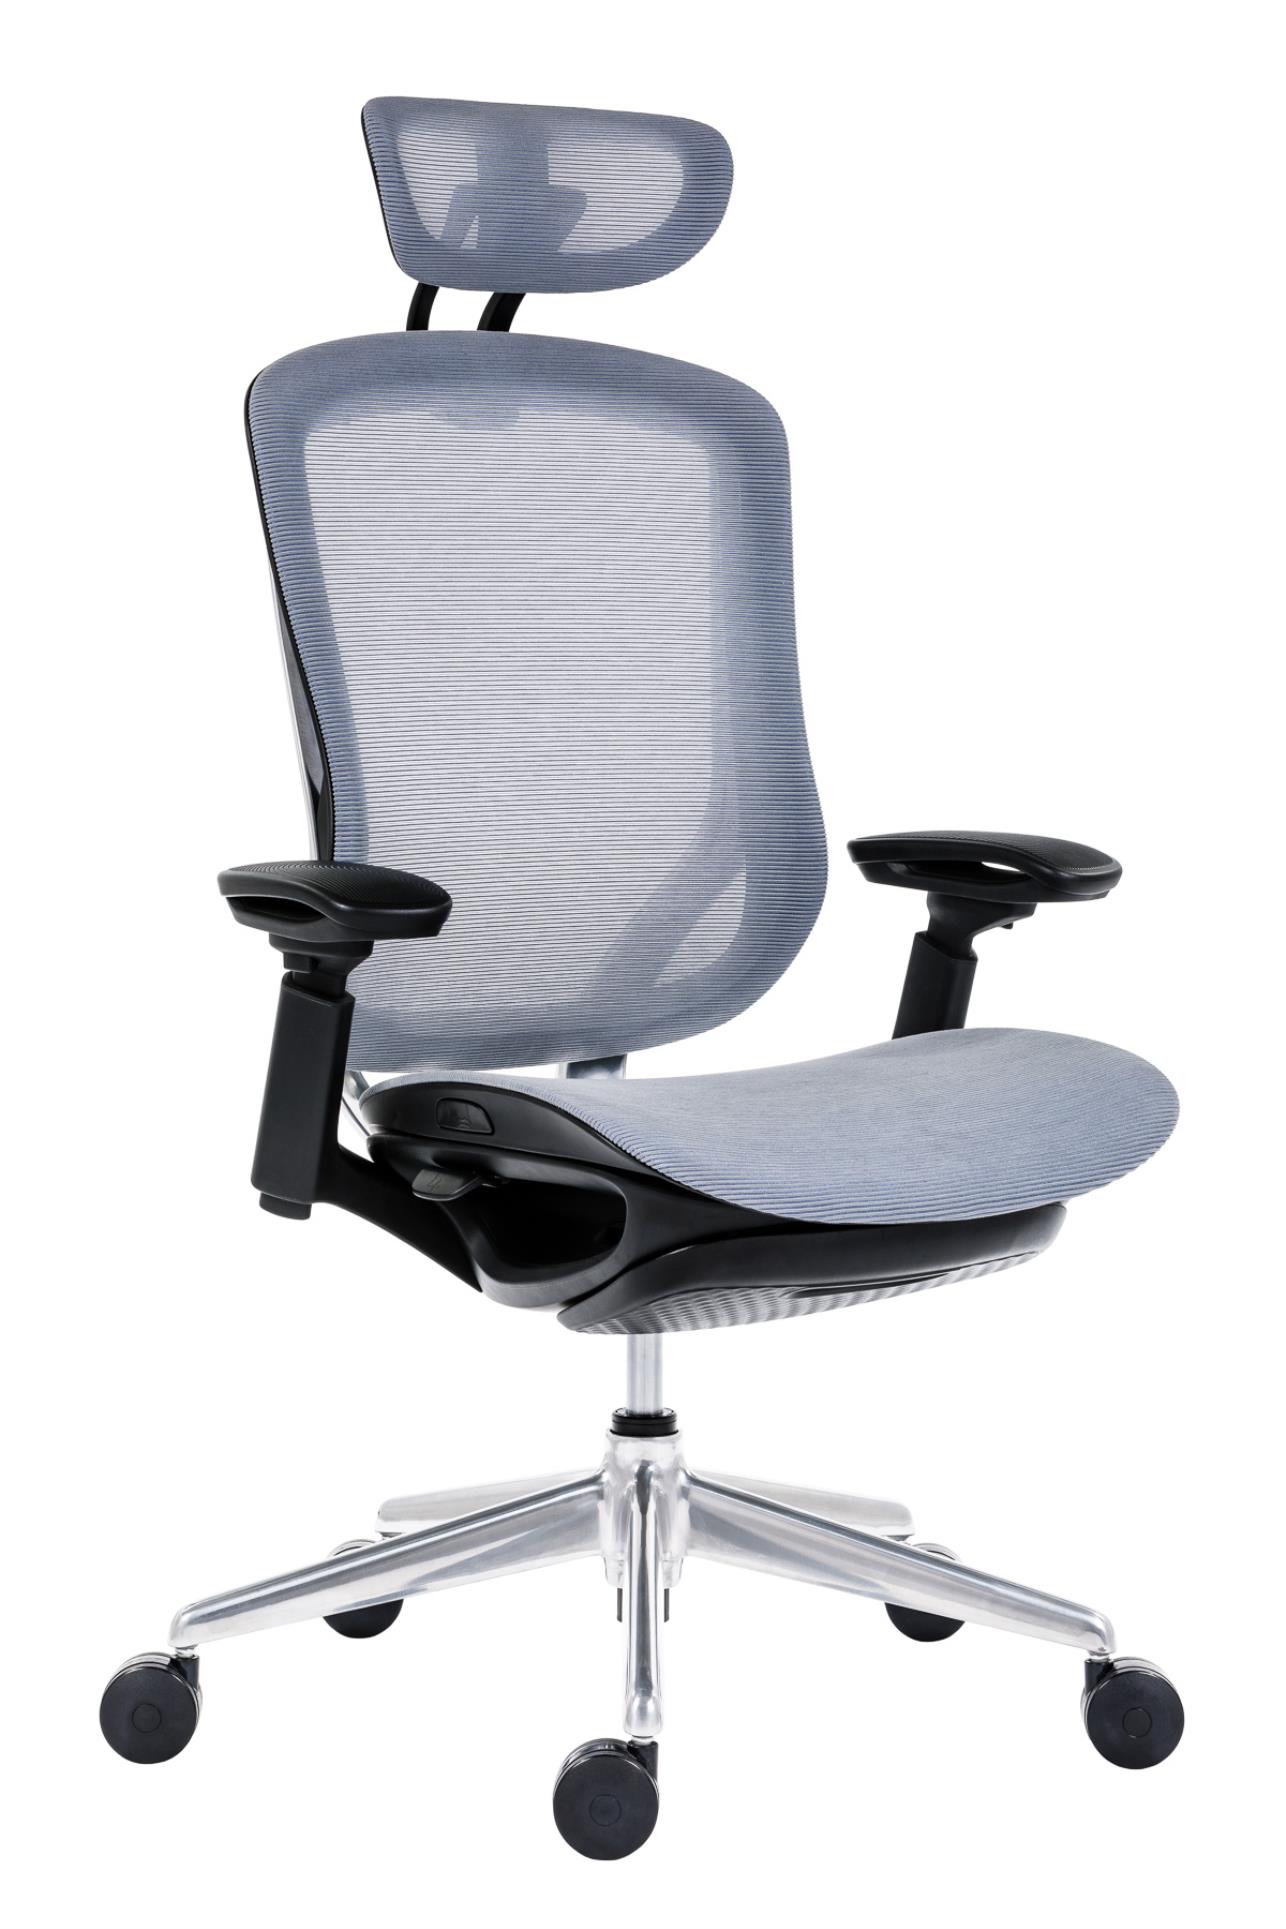 Antares Kancelářská židle BAT NET PDH + FOOTREST - synchro, šedá/černá